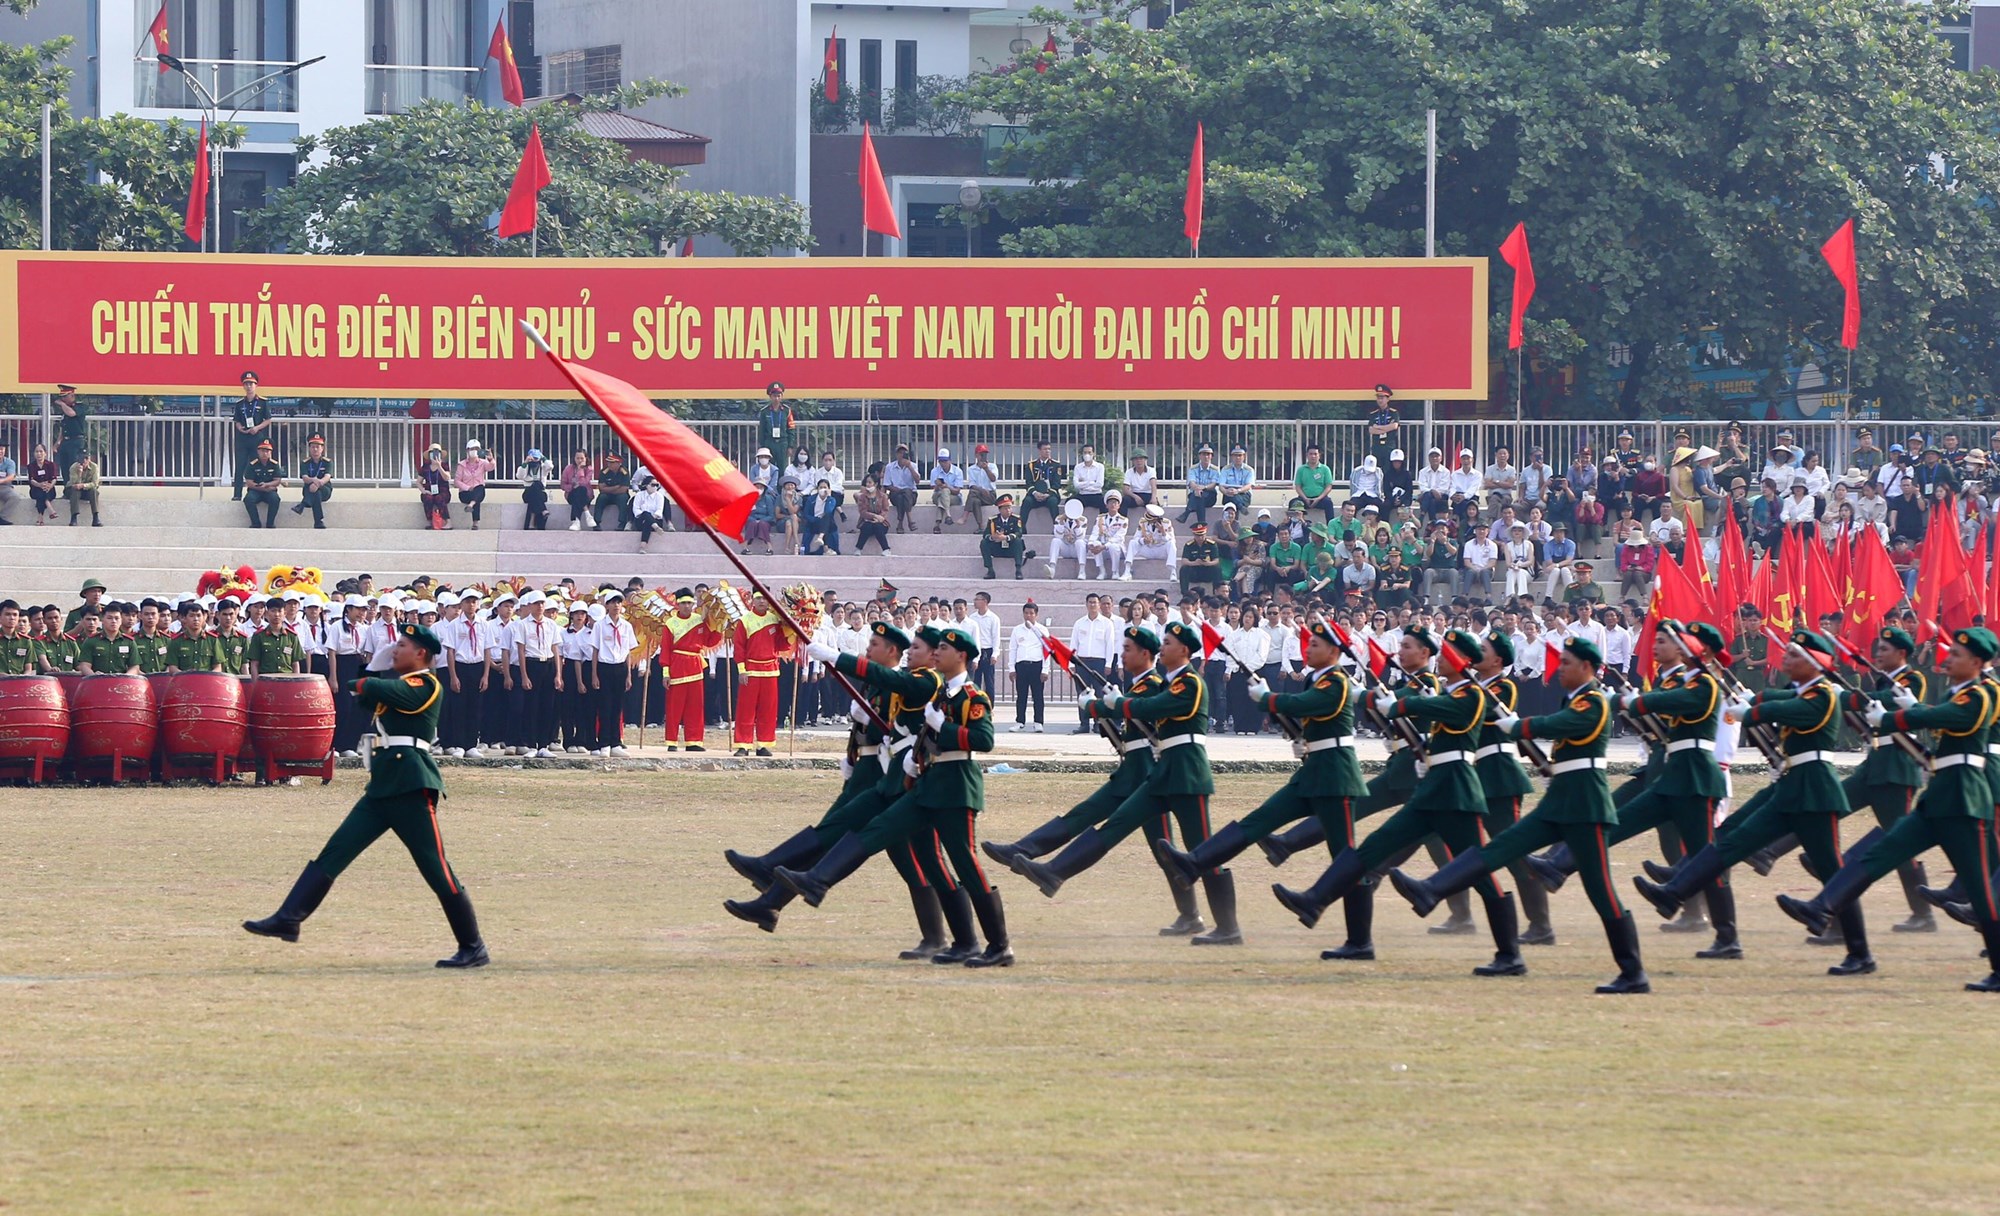 Tổng duyệt diễu binh, diễu hành kỷ niệm 70 năm Chiến thắng Điện Biên Phủ - ảnh 10